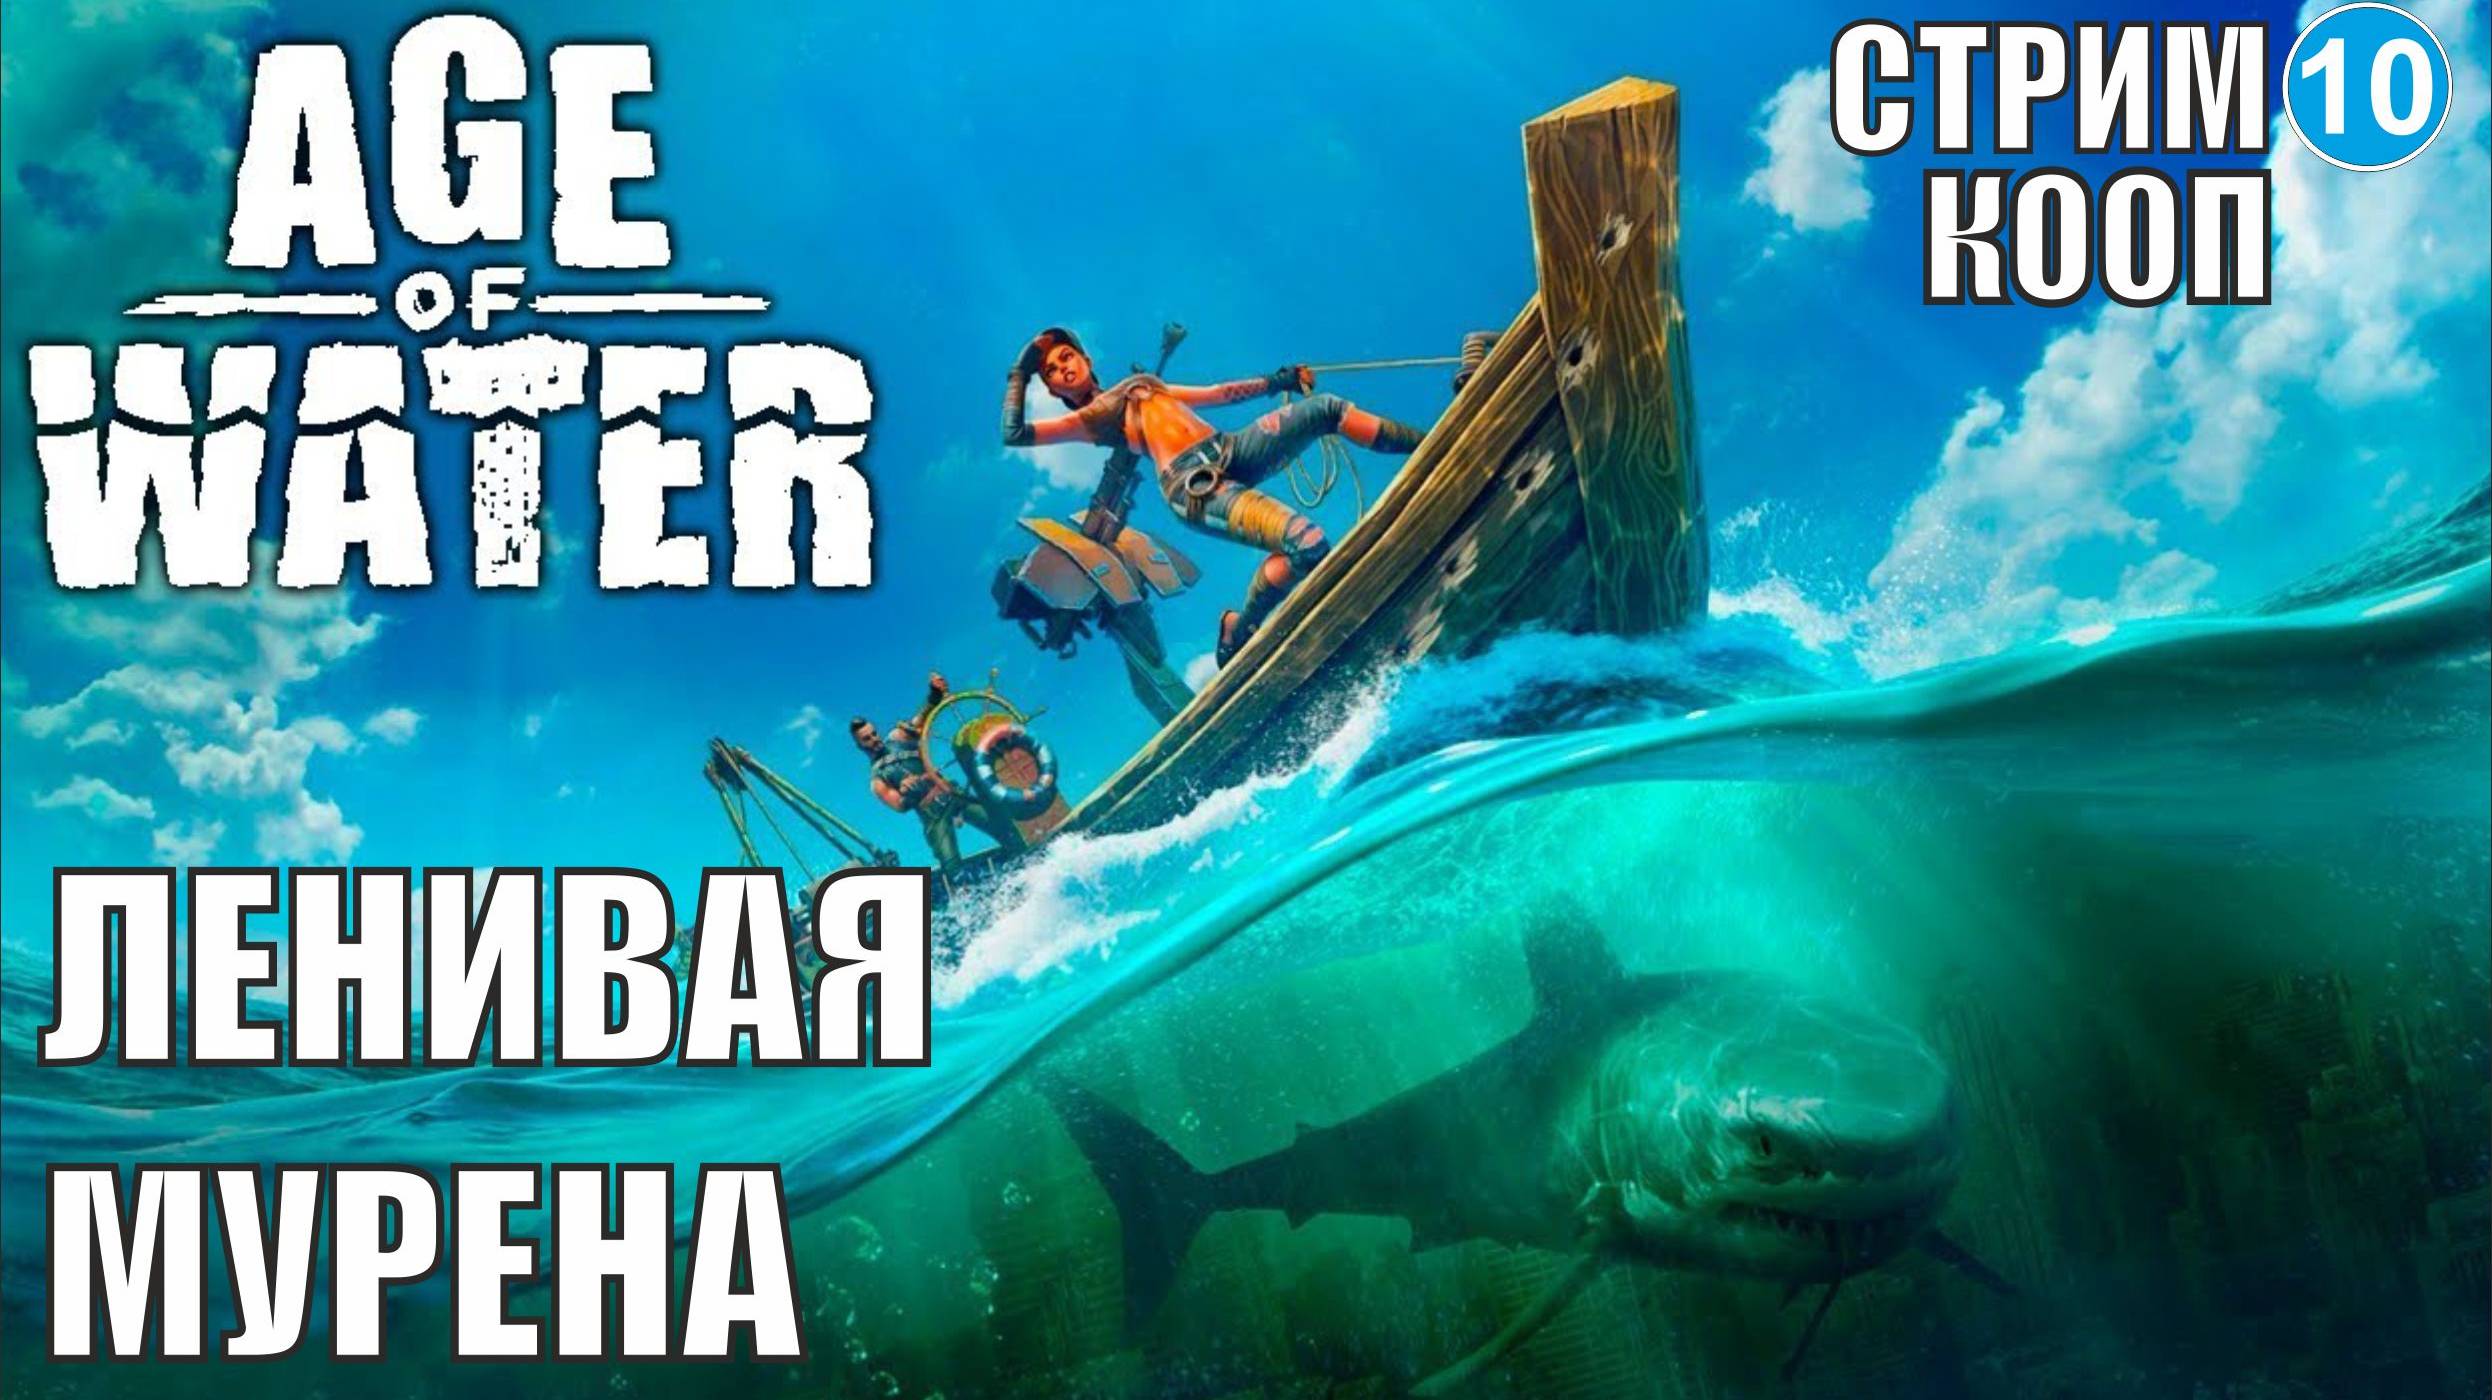 Age of water -  Ленивая Мурена